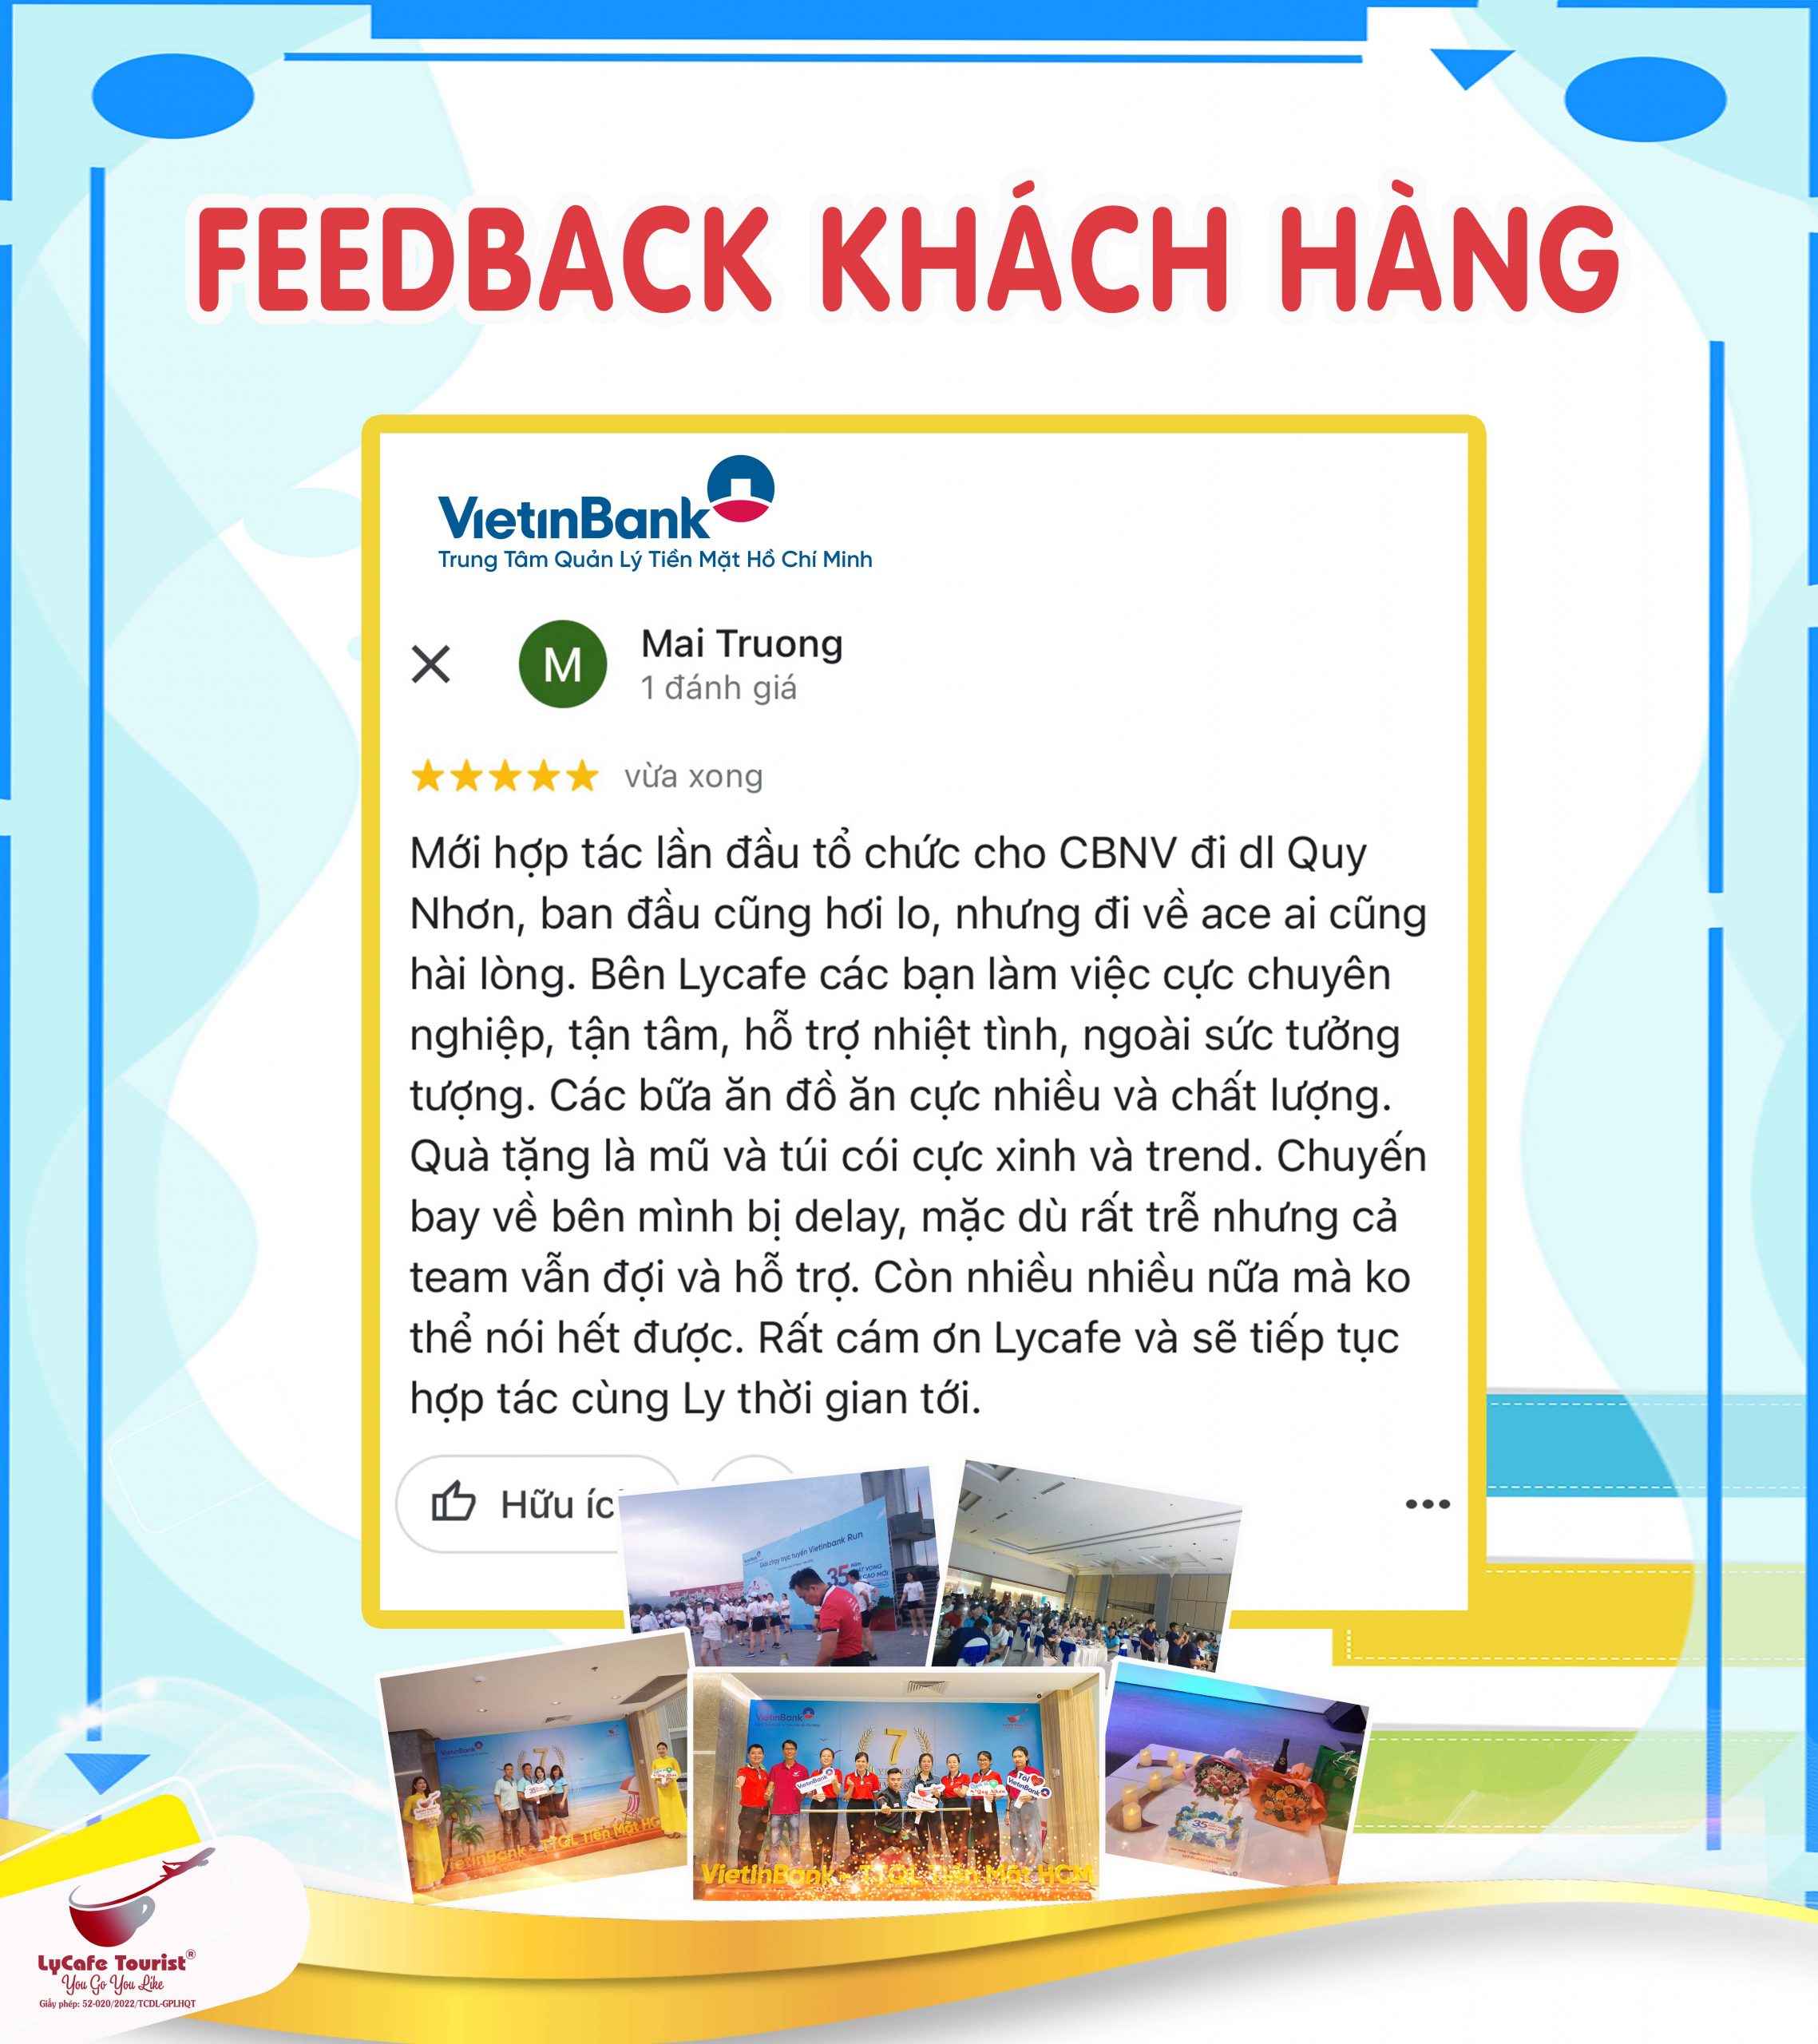 Feedback khách hàng Vietinbank khi sử dụng dịch vụ LyCafe Tourist